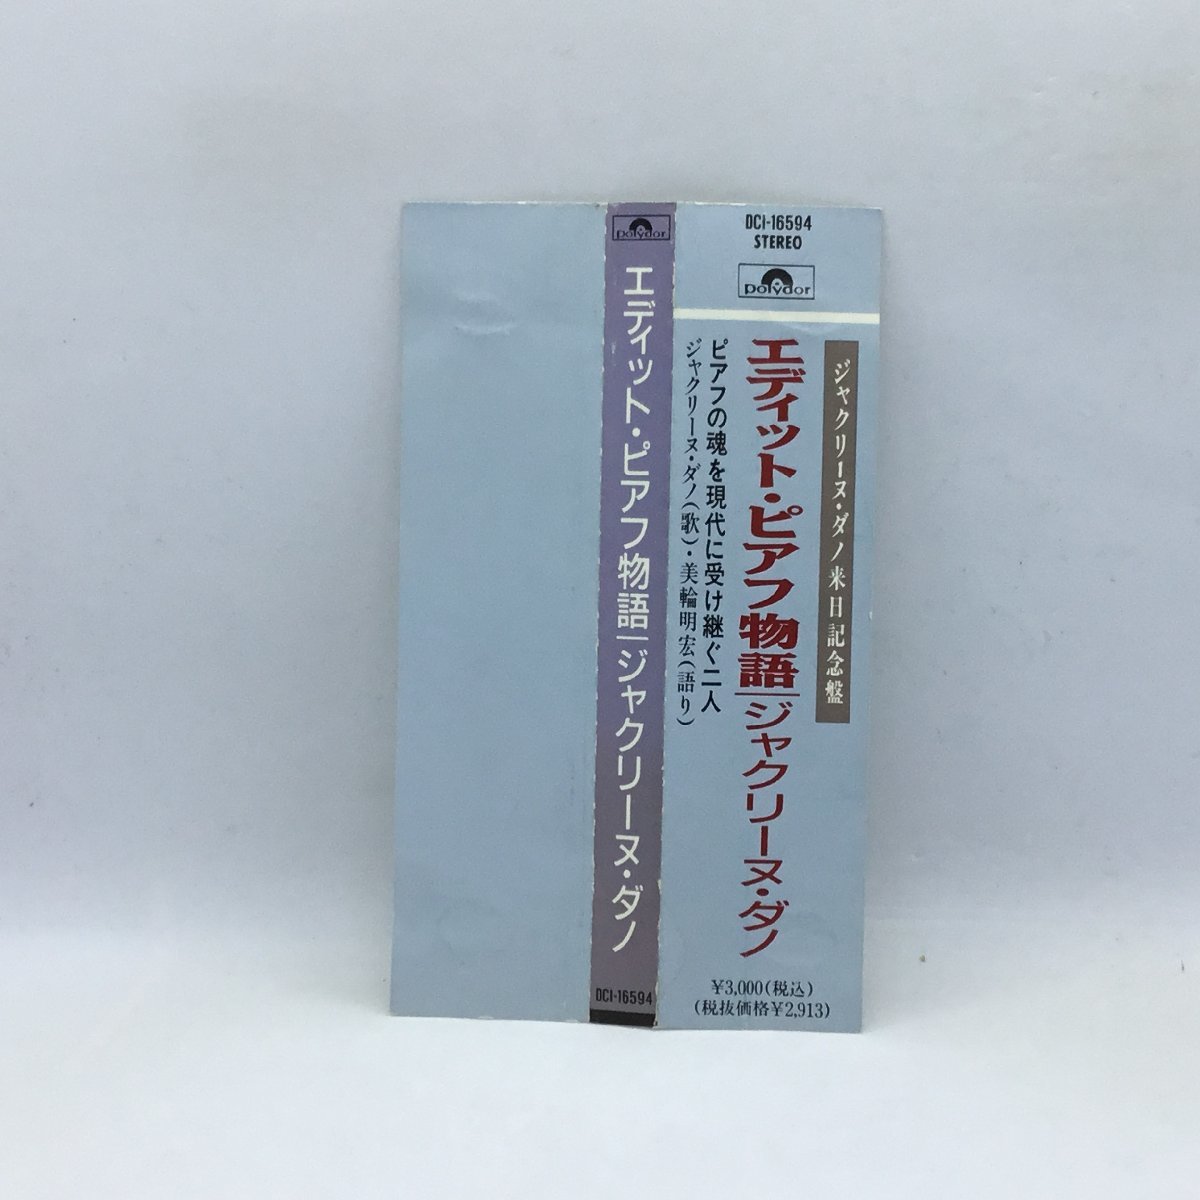 ジャクリーヌ・ダノ / エディット・ピアフ物語 (CD) DCI-16594　美輪明宏_画像4